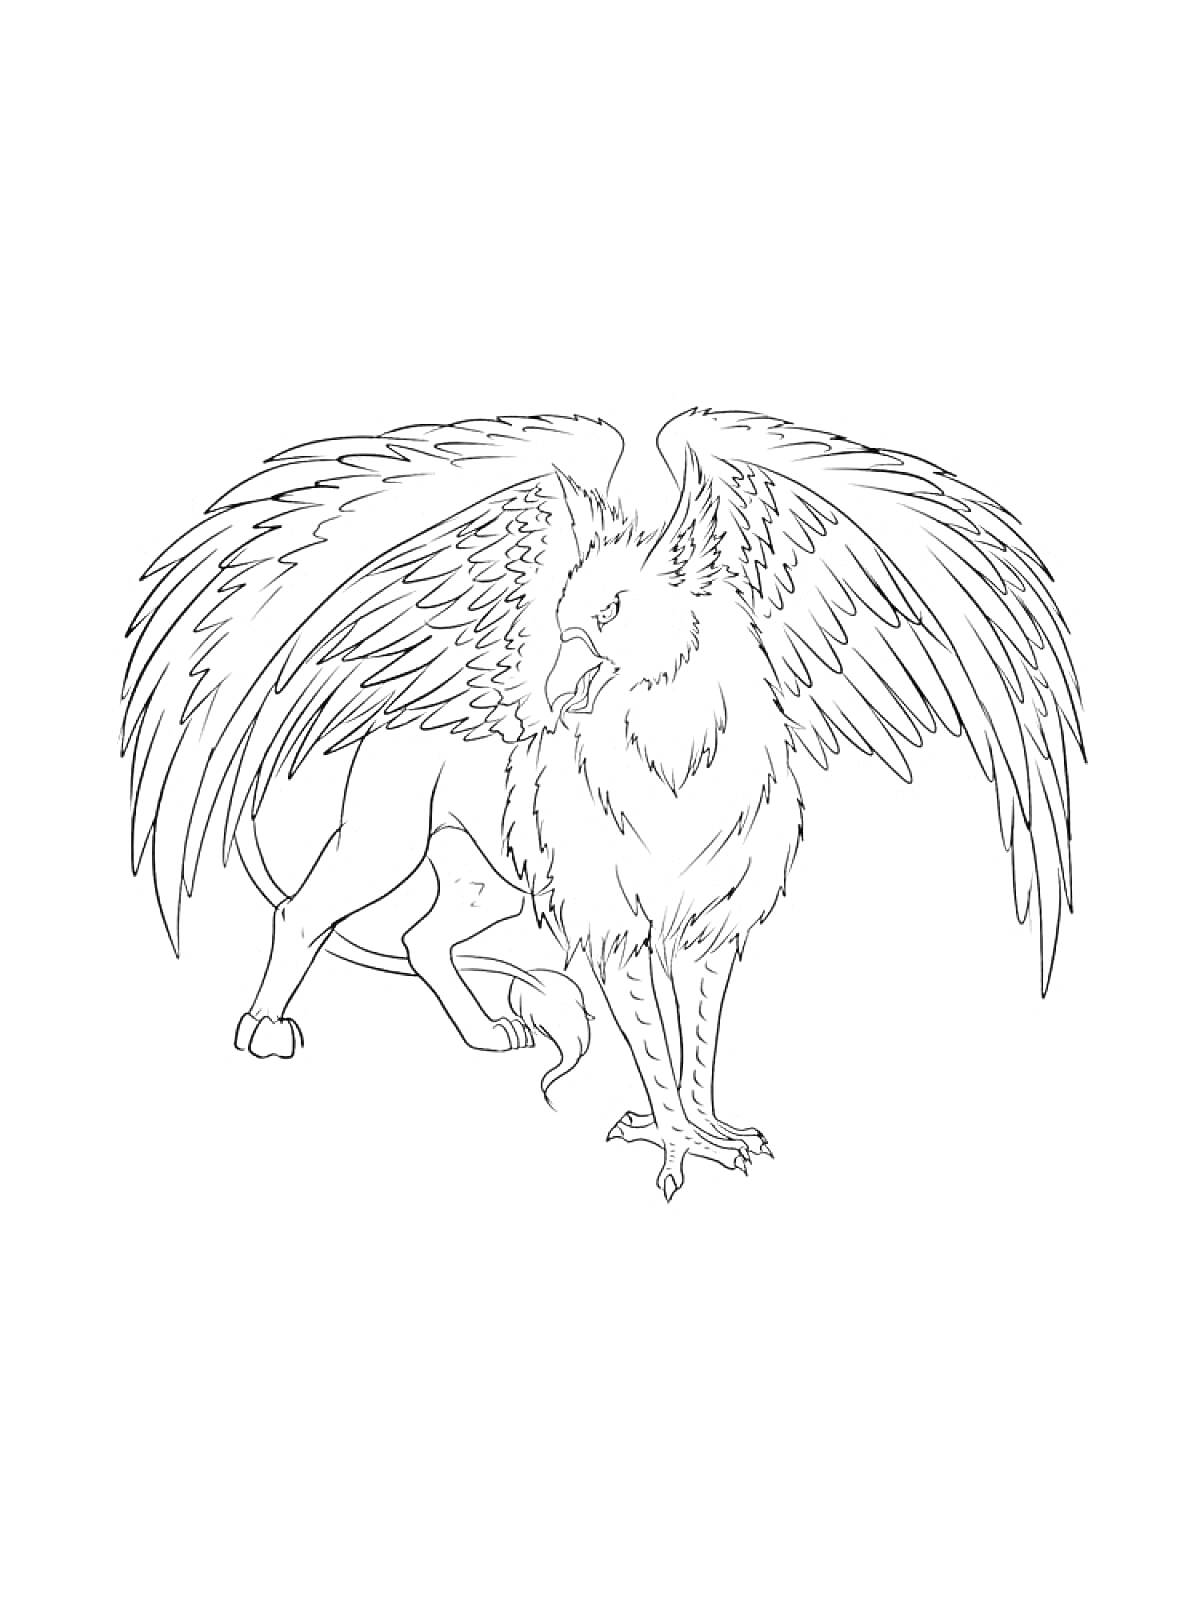 Раскраска Грифон с крупными крыльями и охватывающий позой